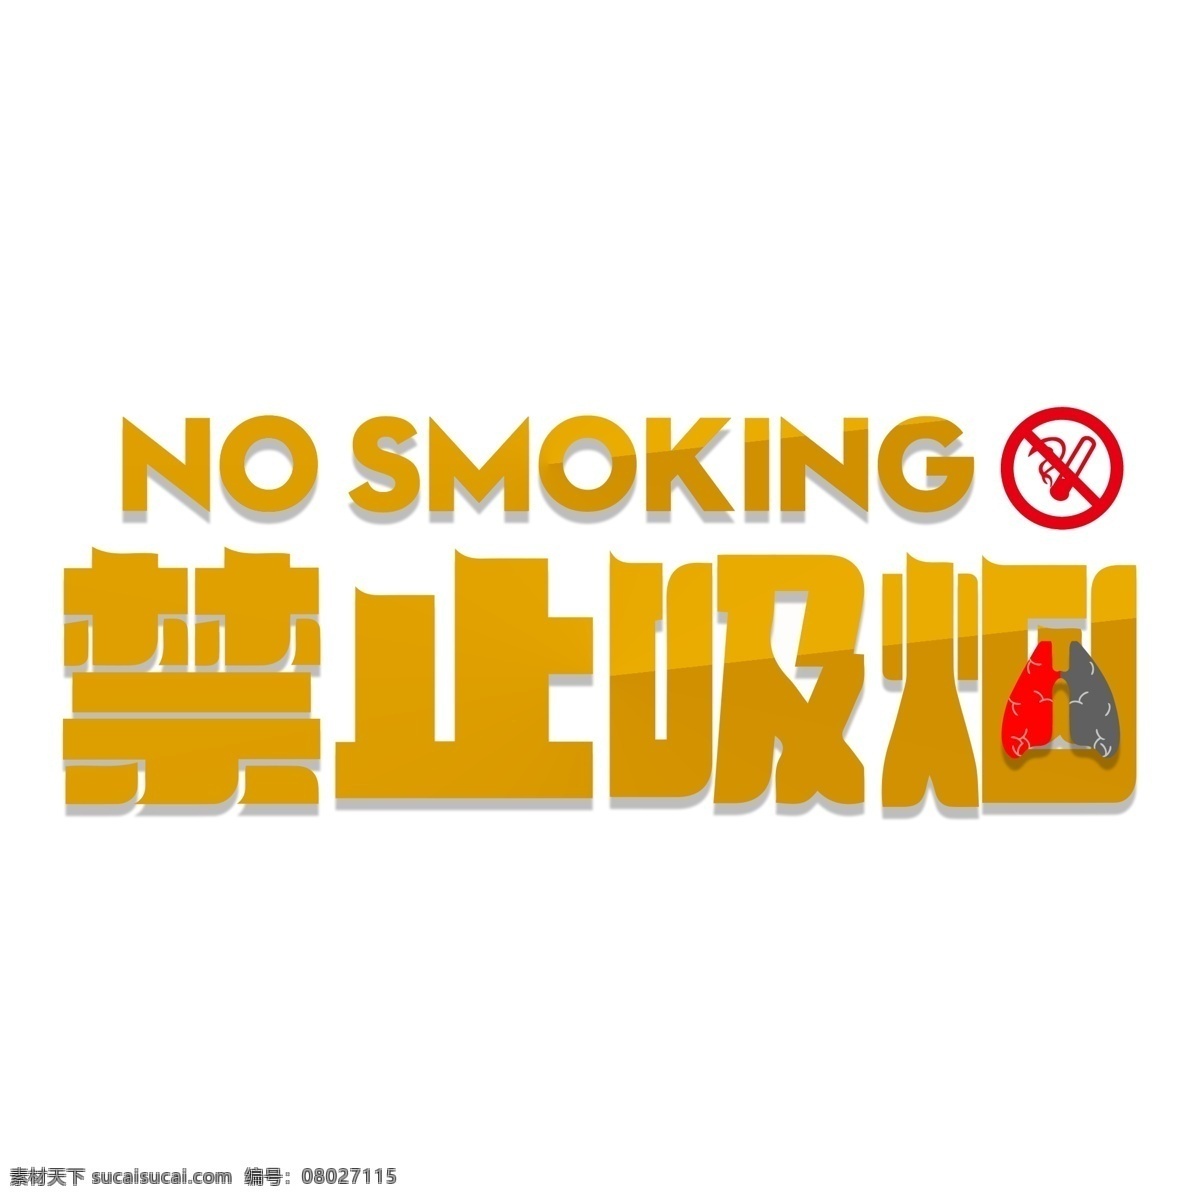 禁止 吸烟 温馨 提示 艺术 字 禁止吸烟标志 请勿吸烟 禁止吸烟 禁止吸烟标语 吸烟有害他人 控烟 禁烟海报 禁烟控烟 世界无烟日 禁止抽烟 戒烟 无烟日 禁止吸烟图标 禁止吸烟背景